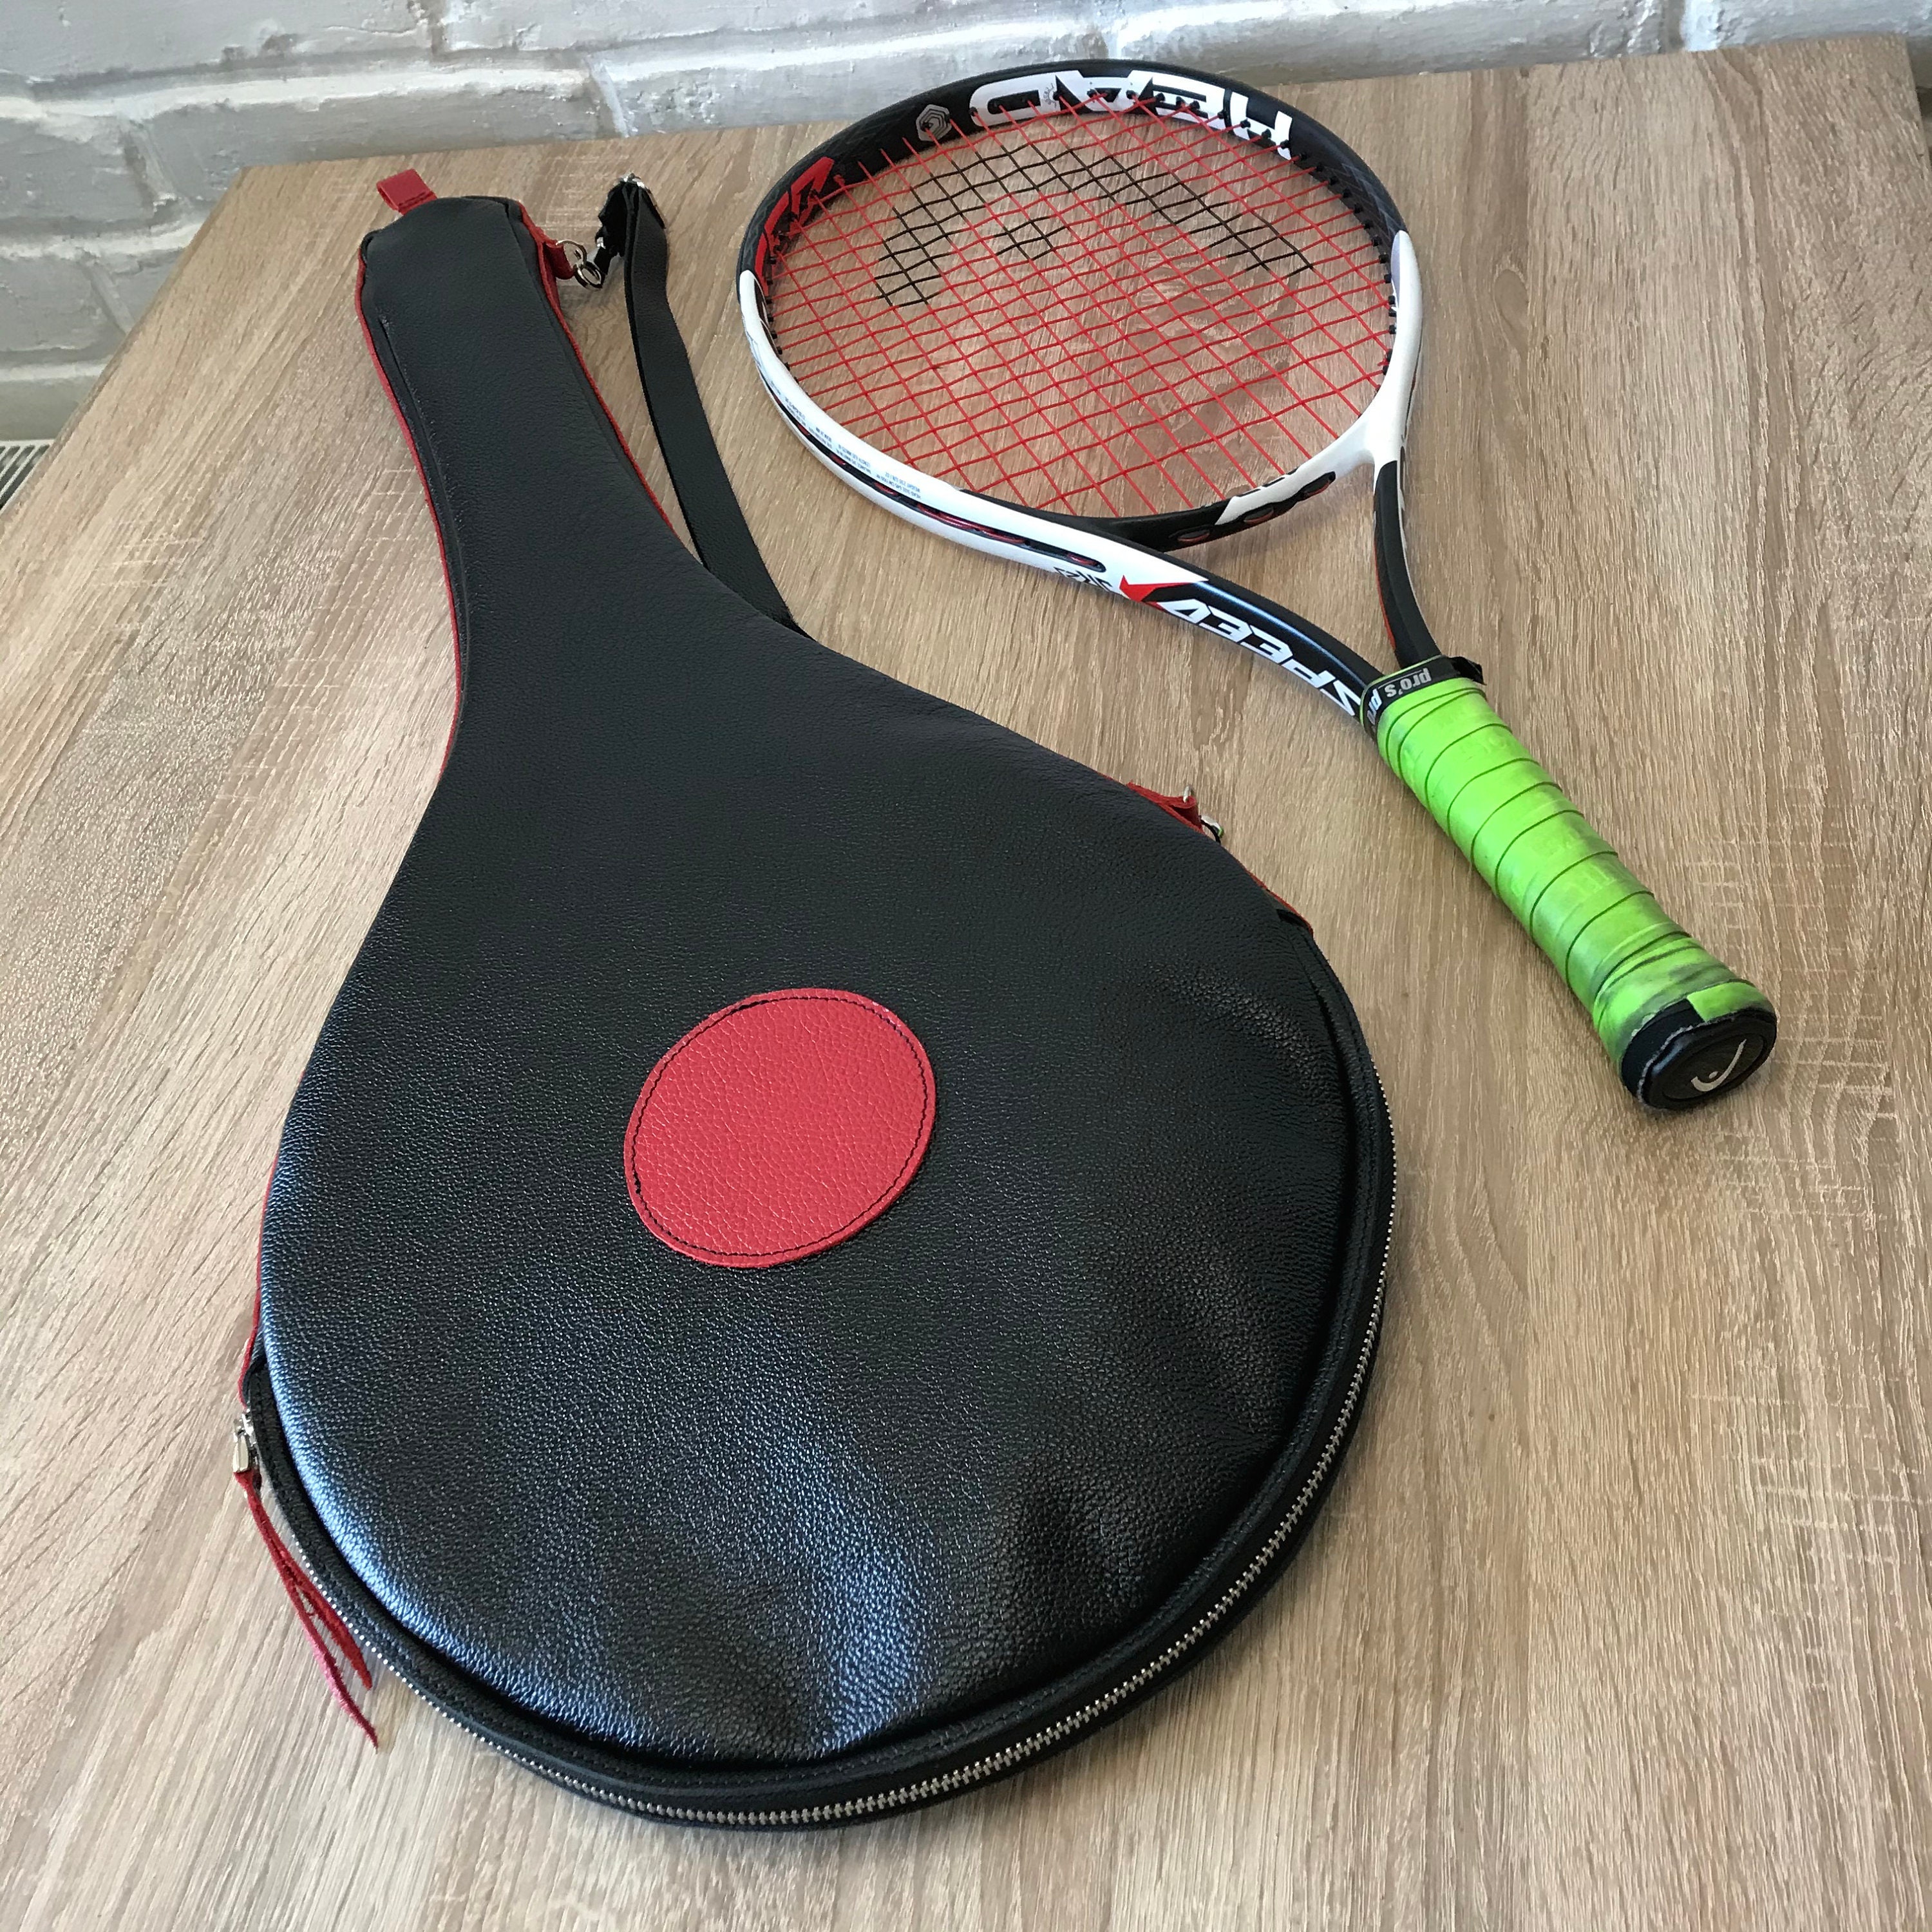 vee Leuk vinden Ritmisch Leather tennis bag - Etsy België